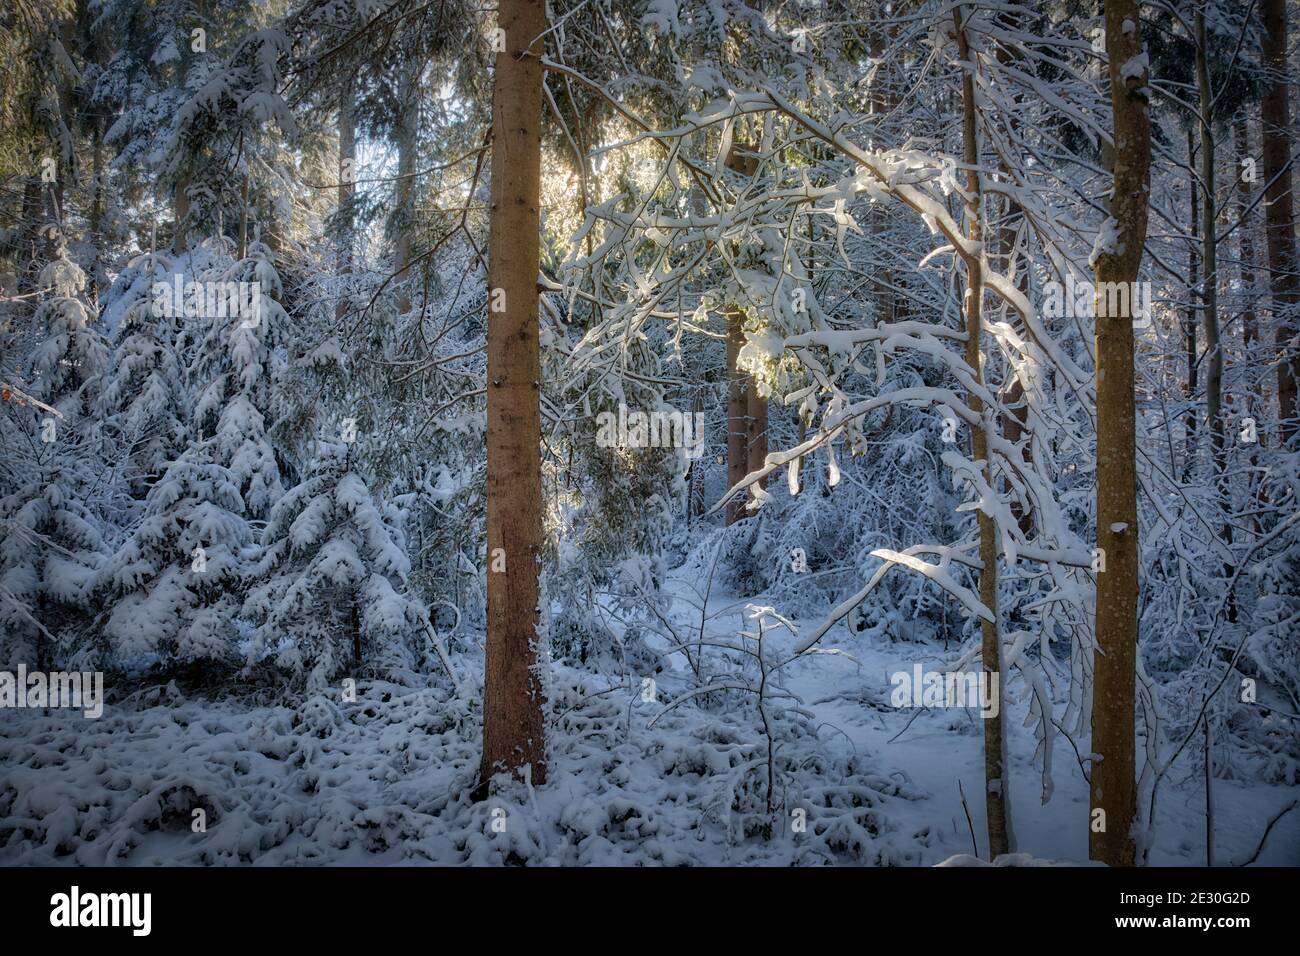 FOTOKUNST: Wenn das Licht durchbricht (Woodland-Szene bei Bad Tölz, Bayern, Deutschland) Stockfoto